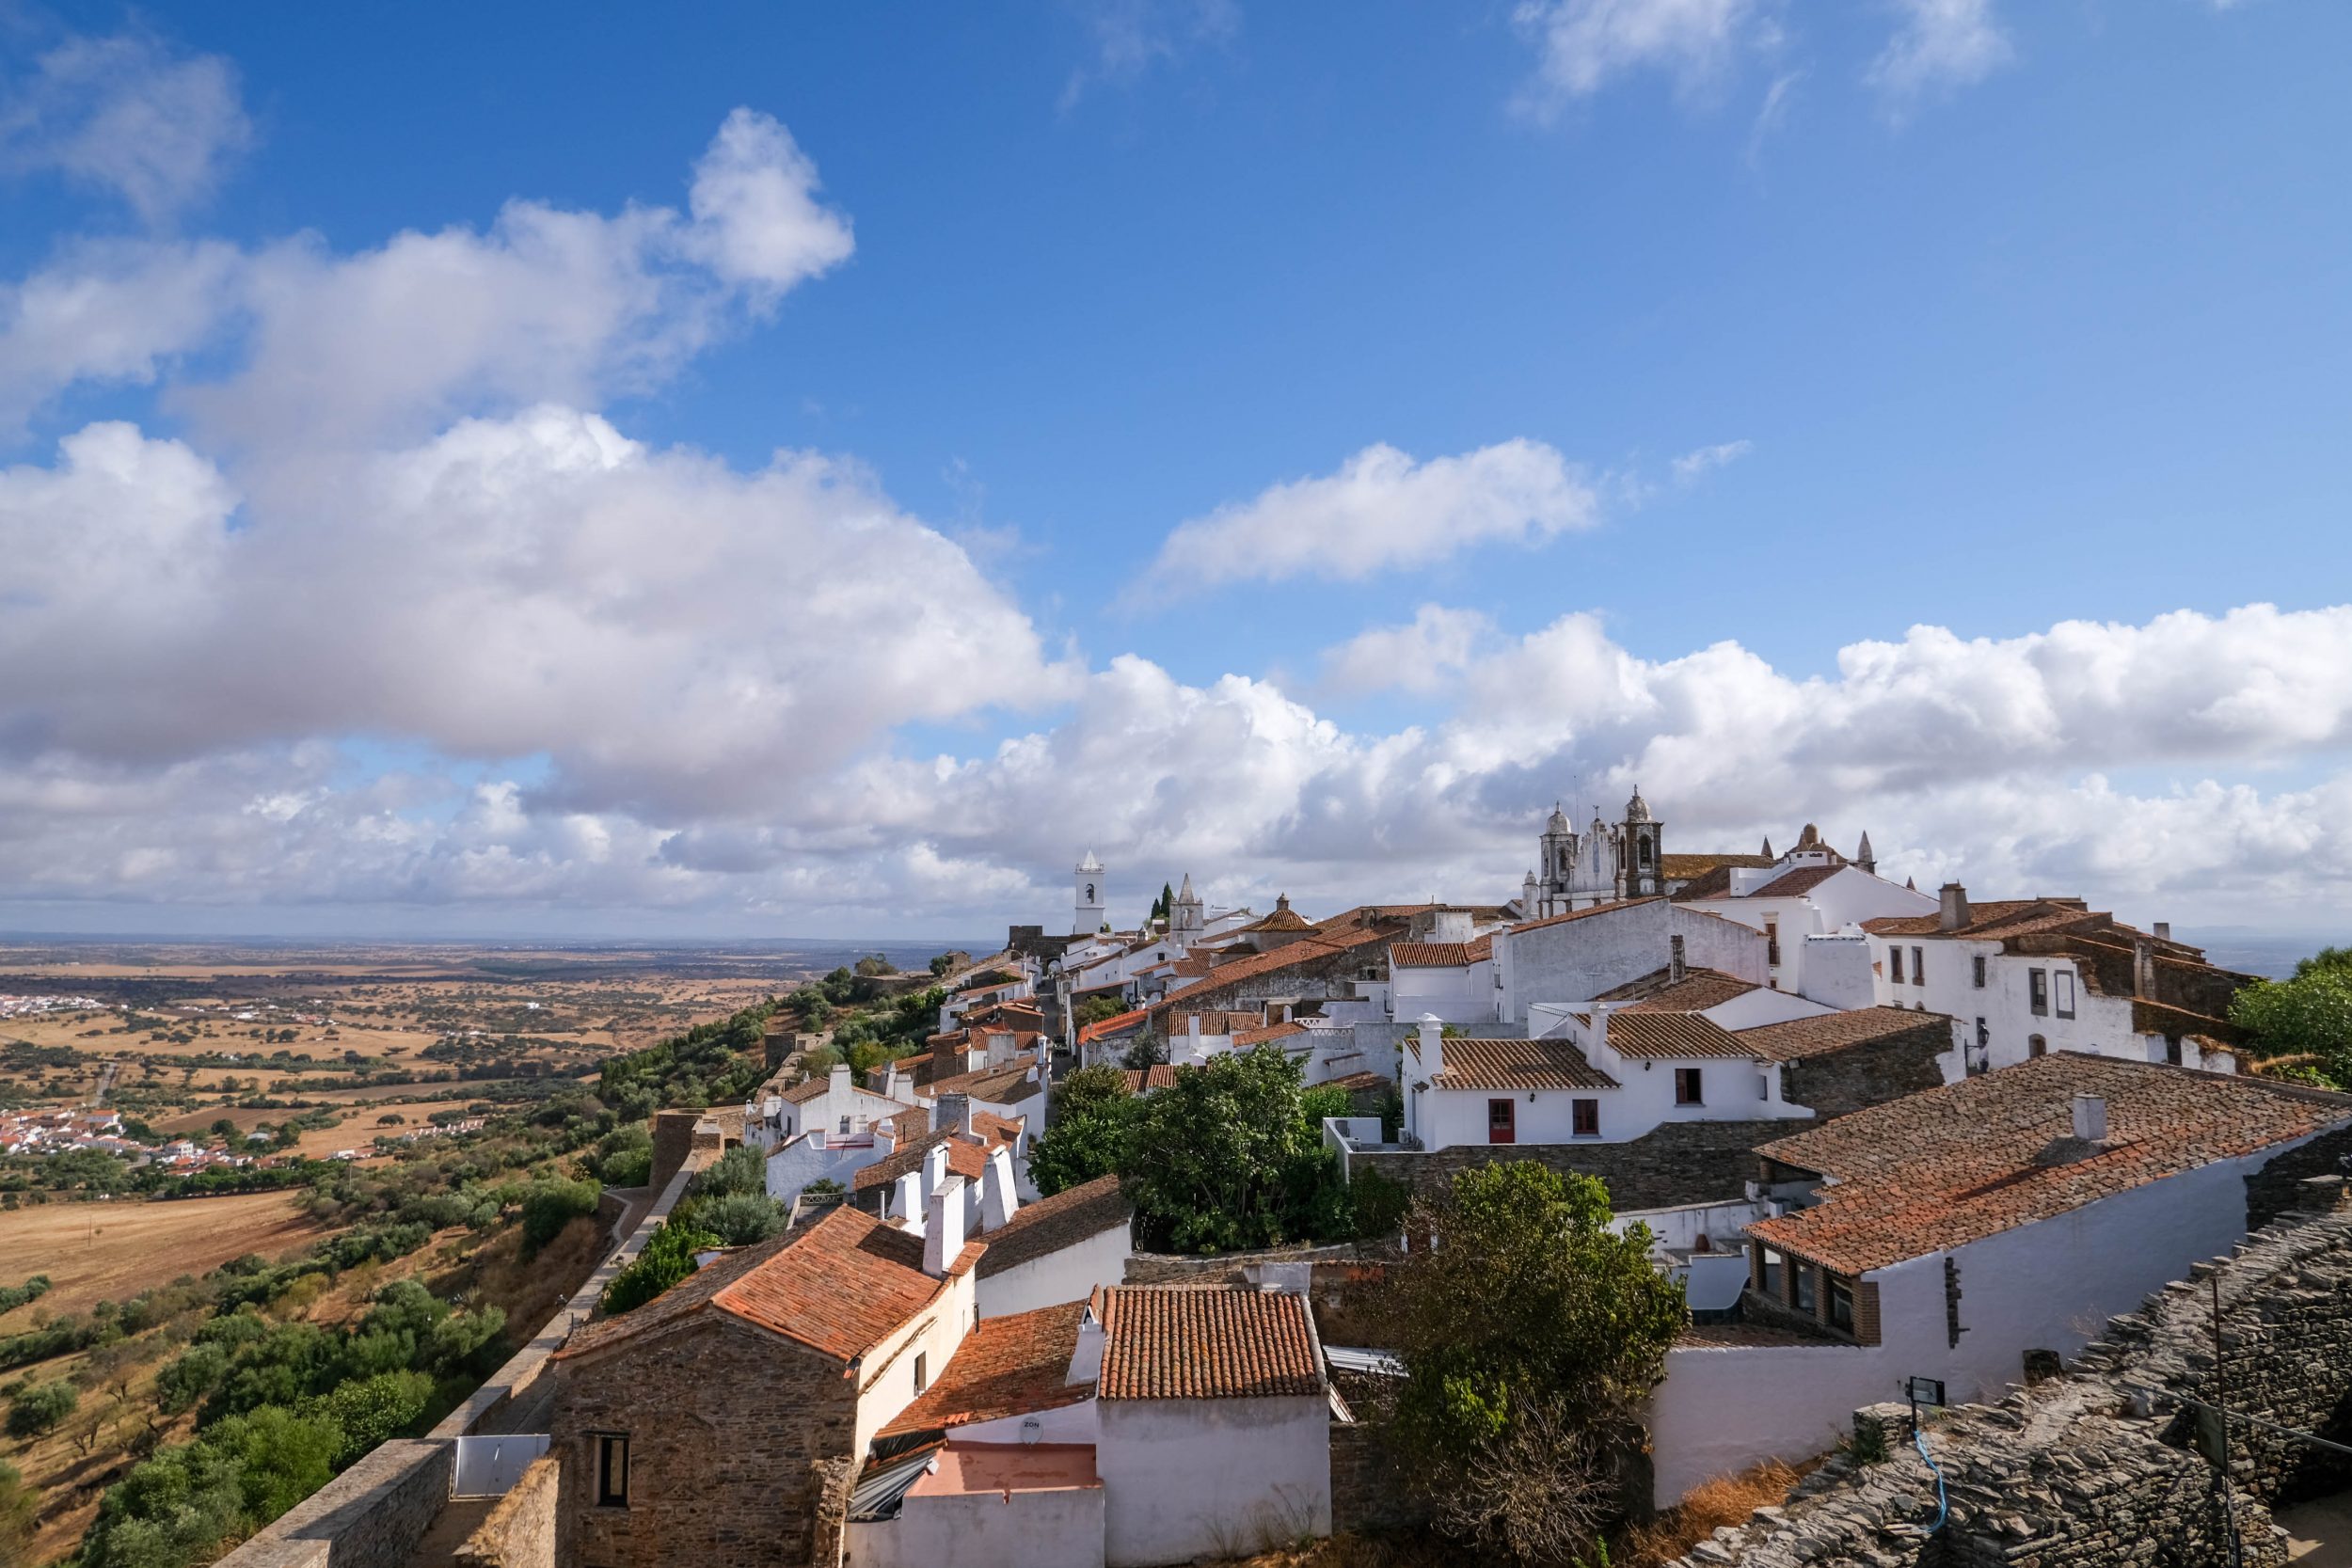 Foto panoramica dal castello di Monsaraz, Portogallo.